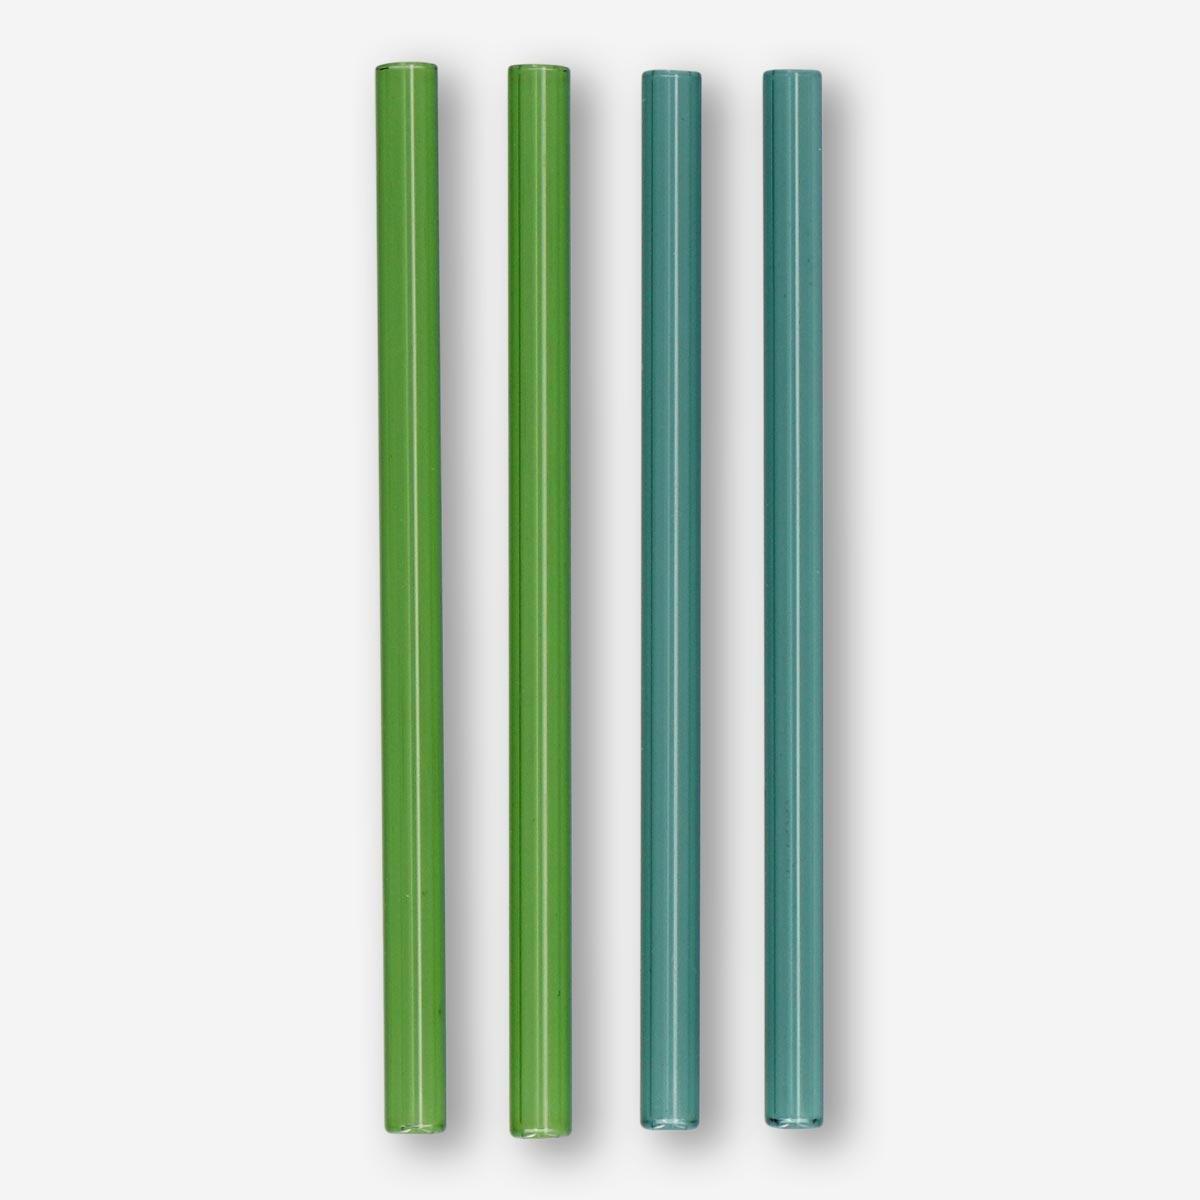 Multicolour glass straws